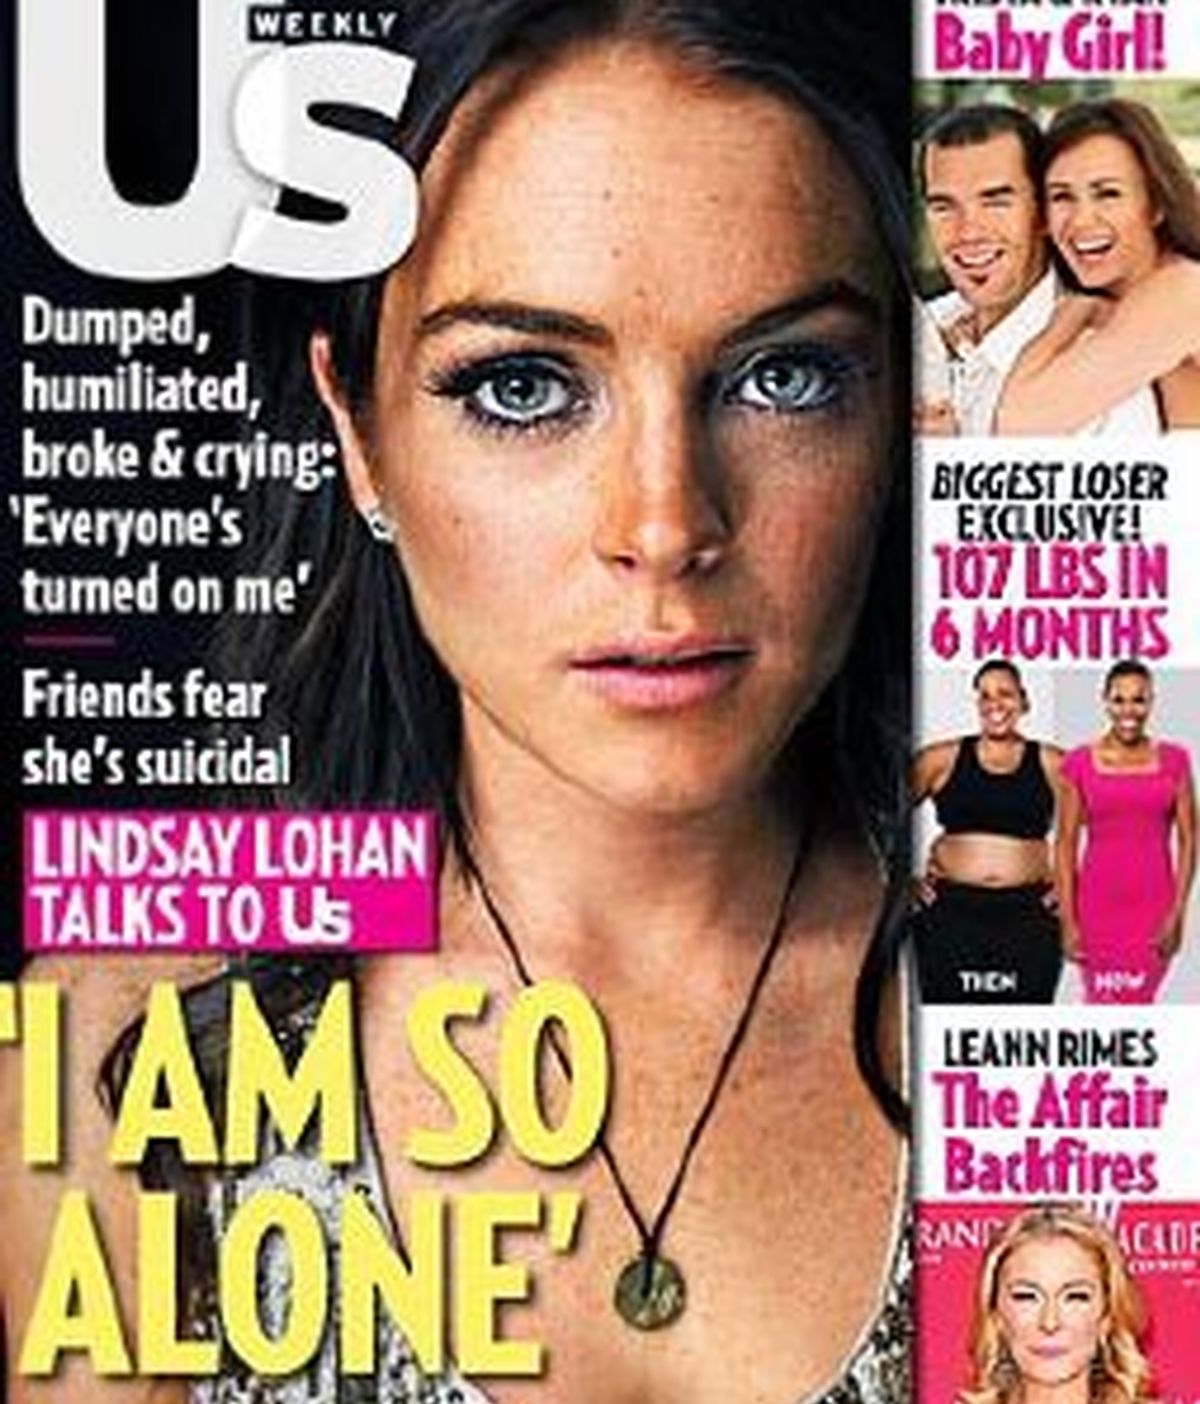 Lindsay Lohan dice estar "en el infierno" después de la ruptura con su novia Samantha Ronson. Foto Us Weekly magazine.